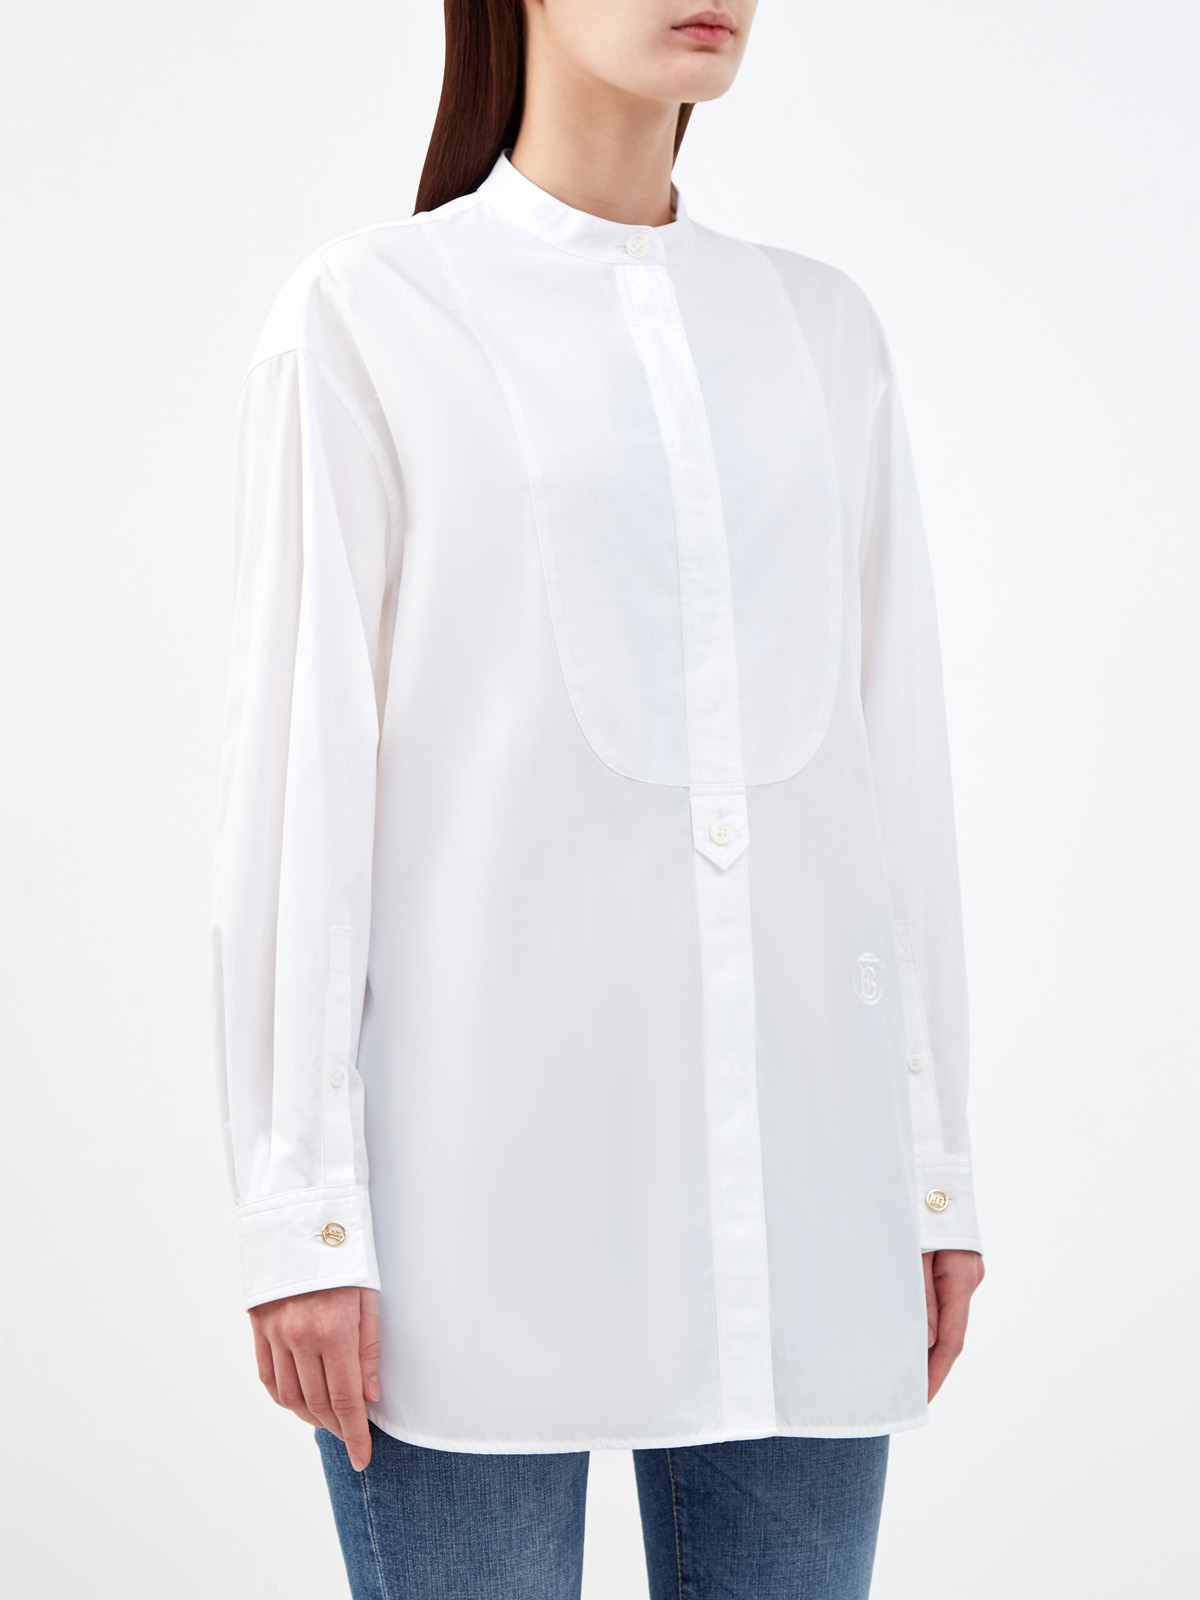 Объемная рубашка из капсульной коллекции Future Heritage с монограммой BURBERRY, цвет белый, размер S;L;XL;2XL;M - фото 3